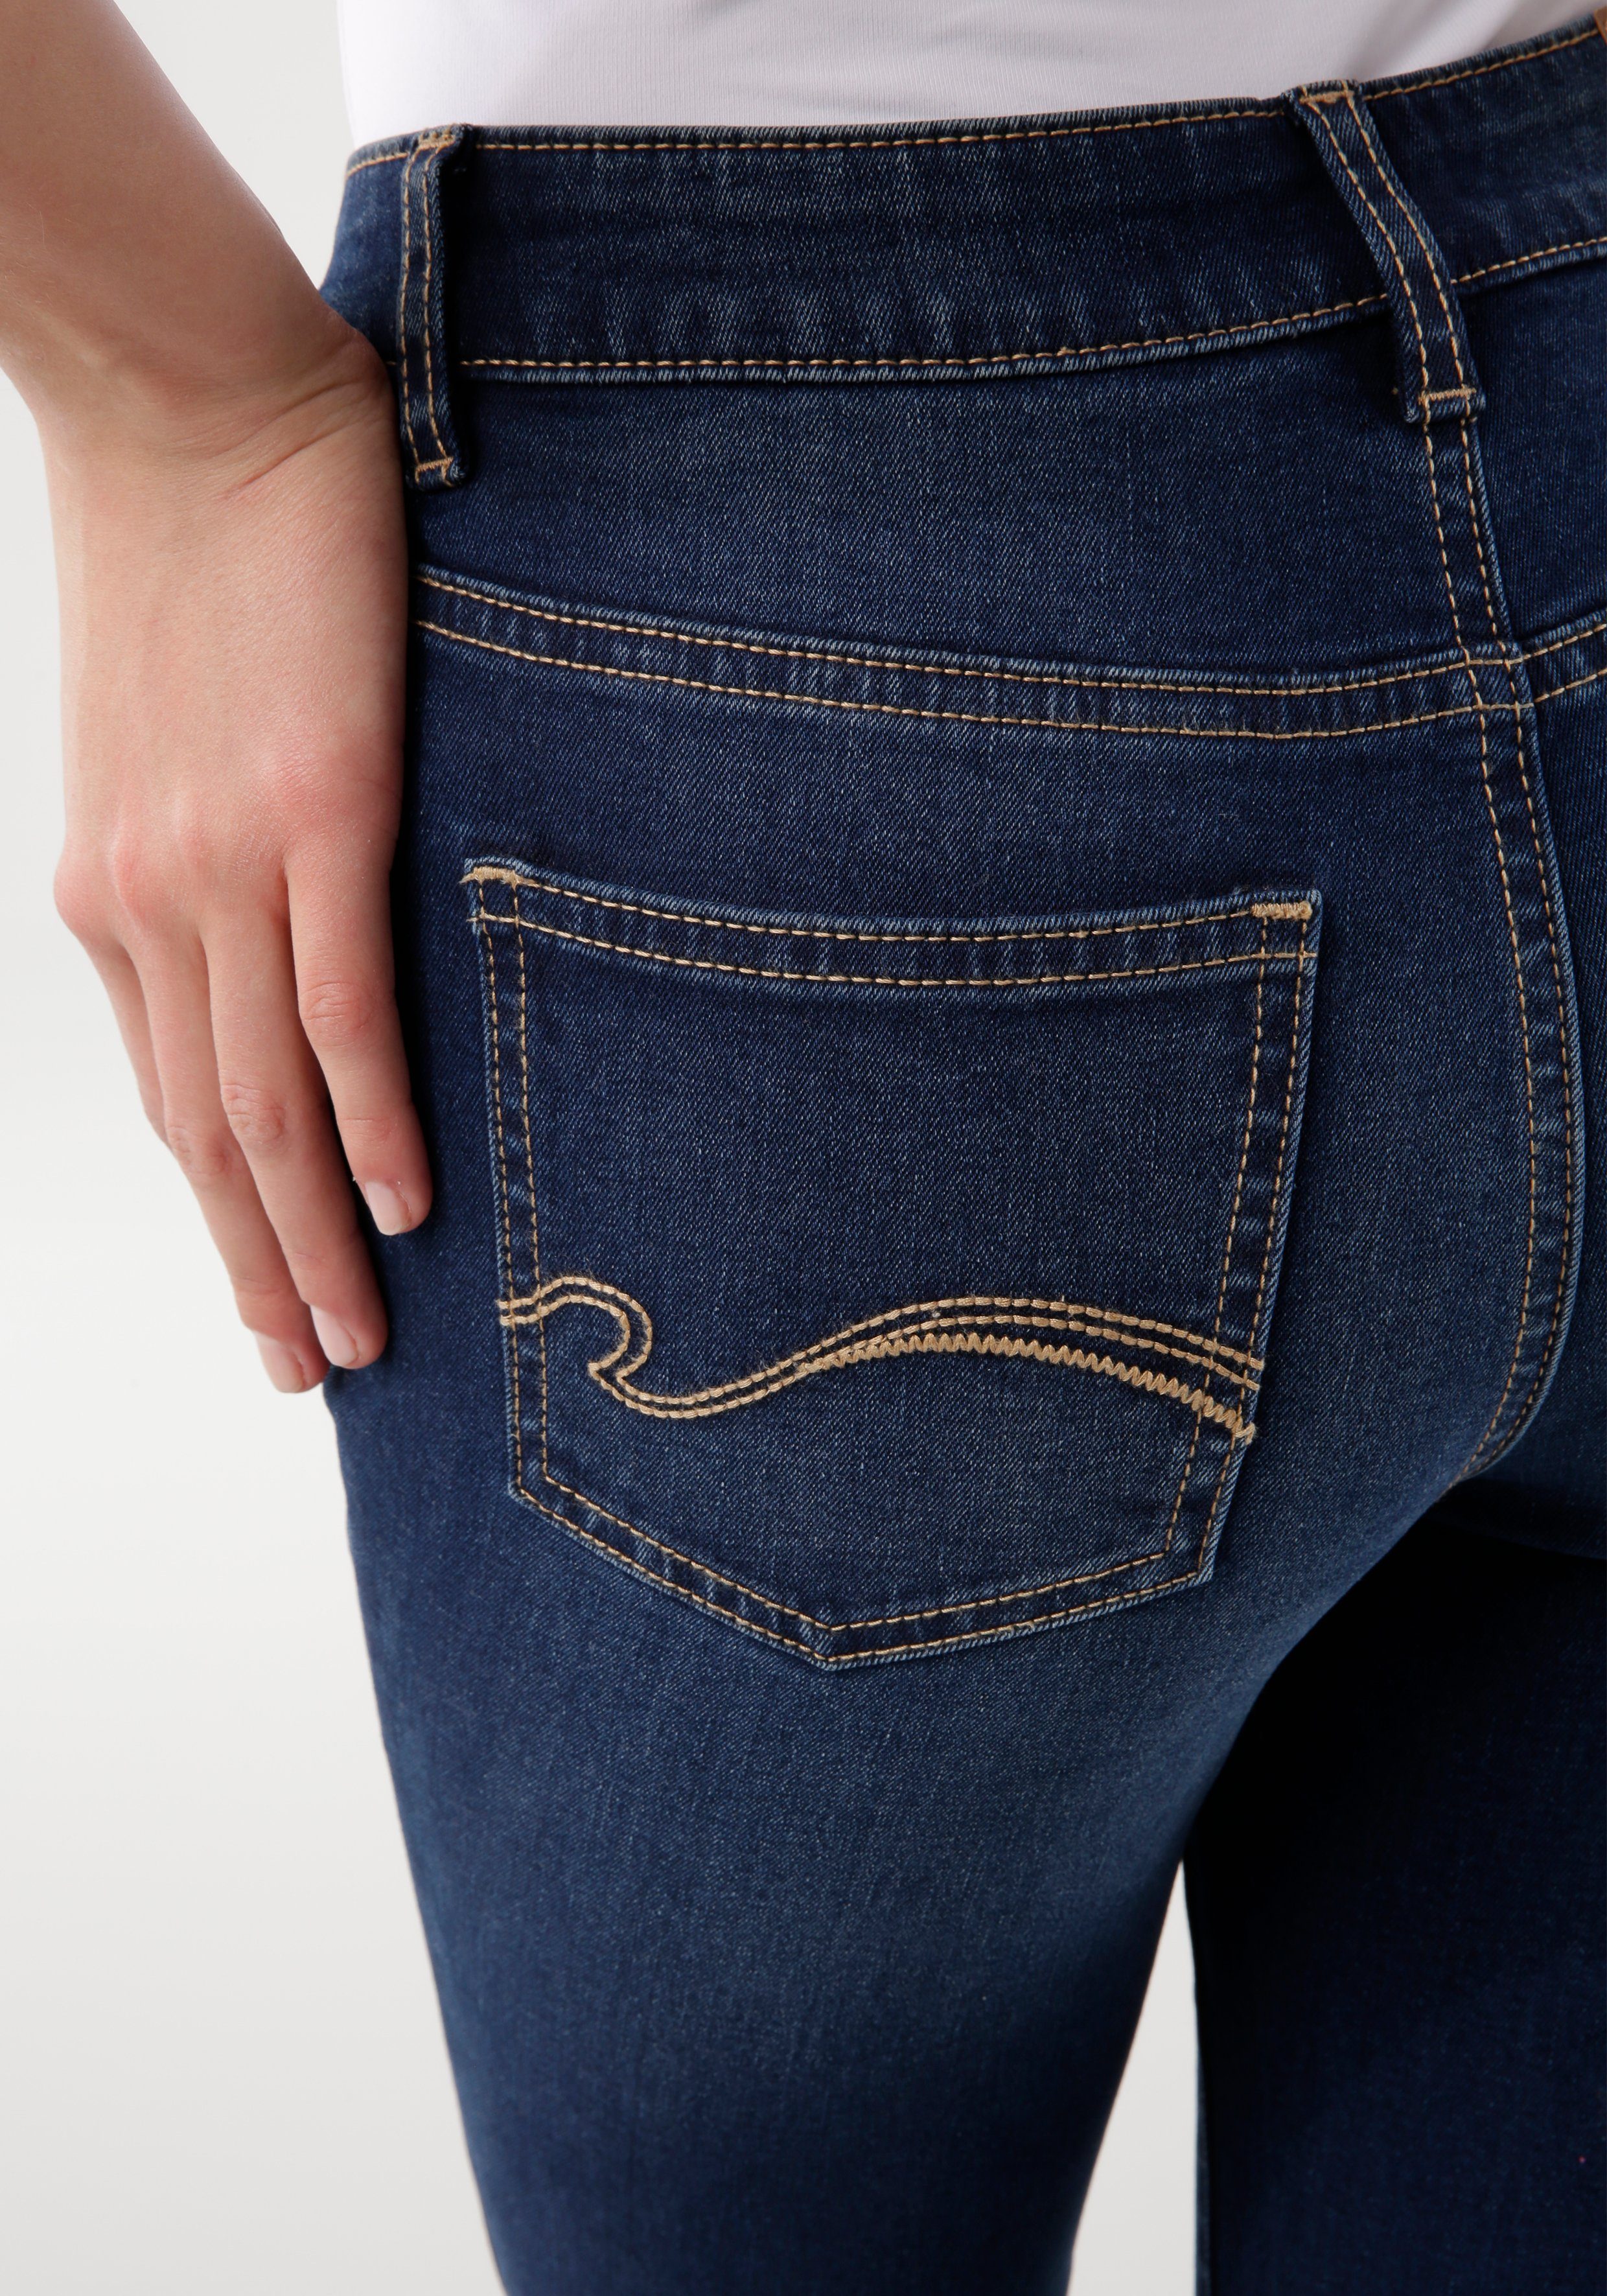 HIGH darkblue-used 5-Pocket-Jeans used-Effekt RISE SKINNY KangaROOS mit SUPER